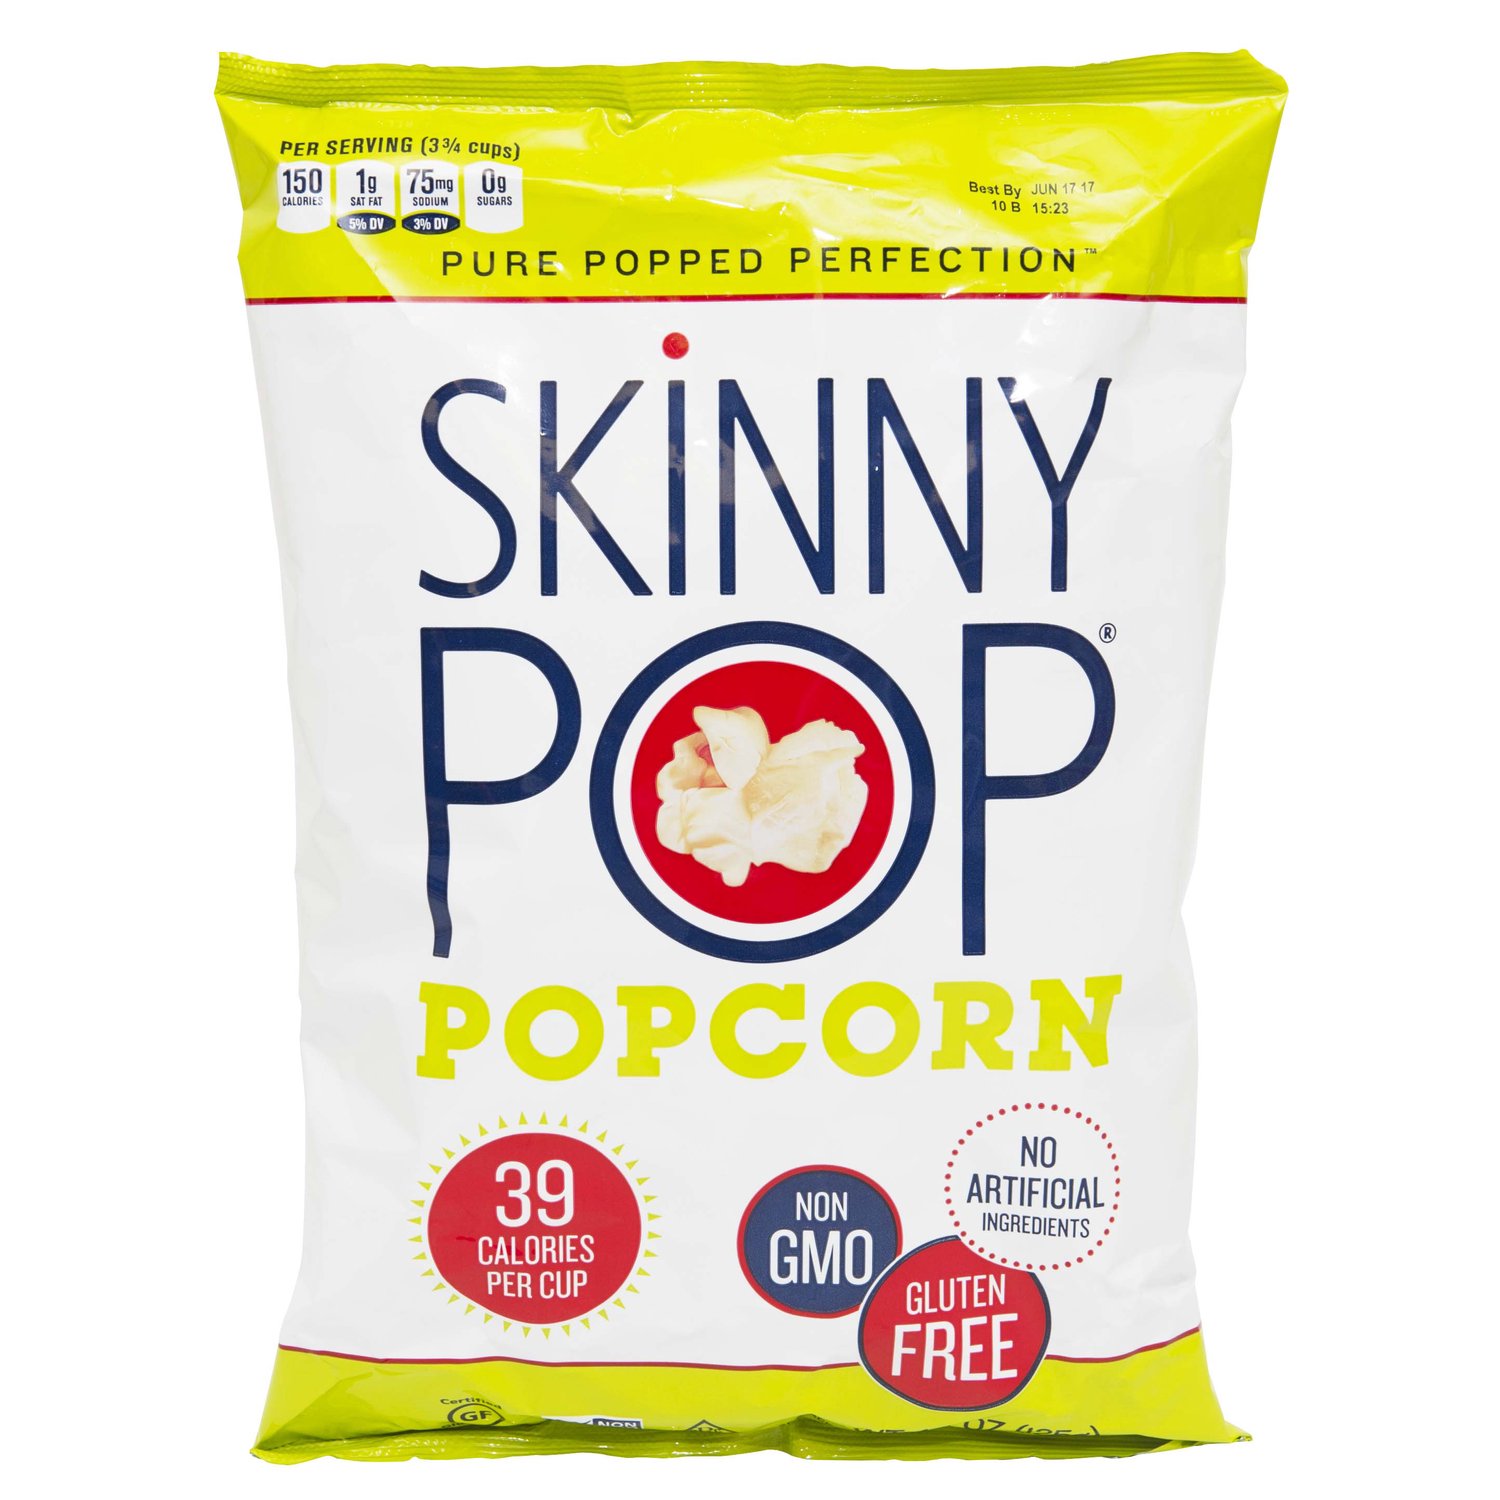 Skinny Pop Original Popcorn